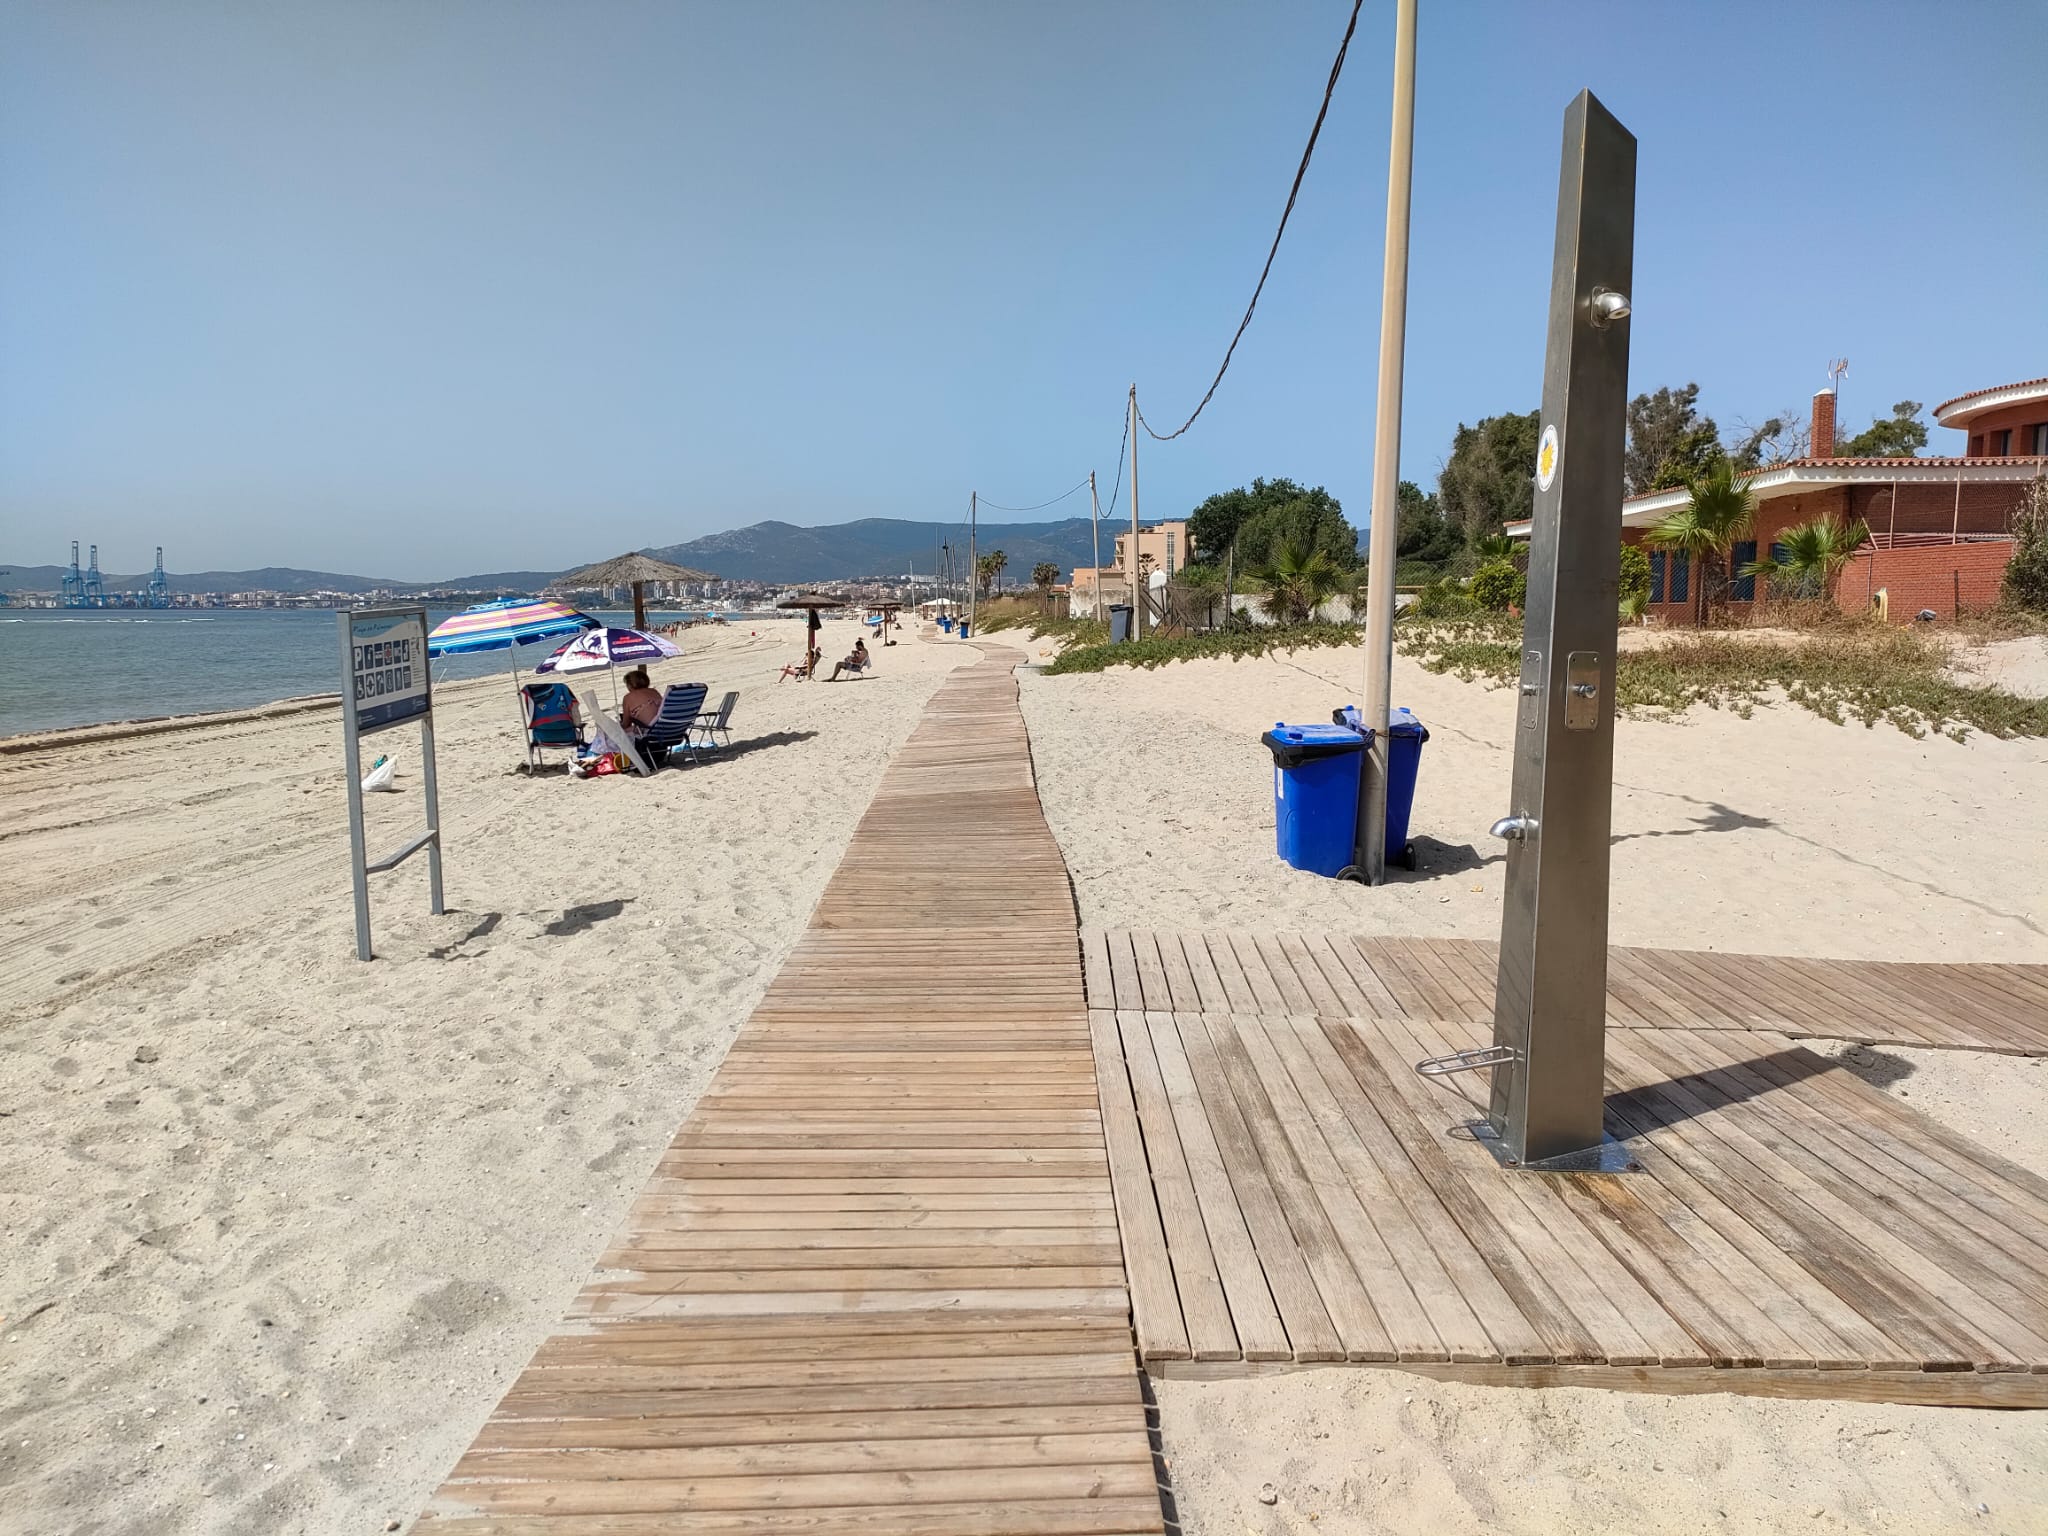 La playa de Palmones no tendrá duchas ni lavapiés este verano debido a la sequía.